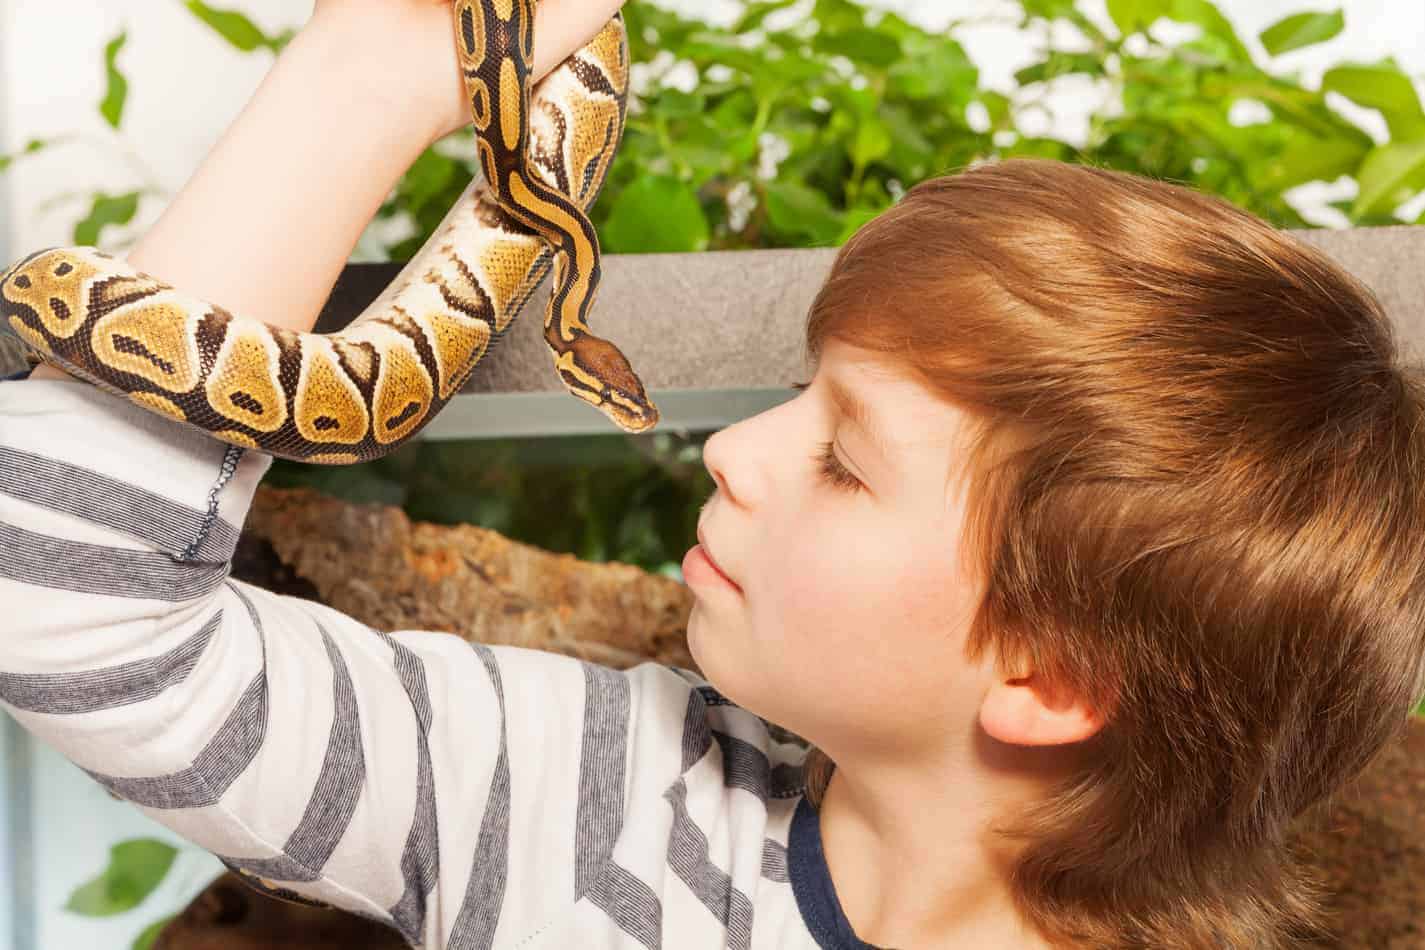 How do I show affection to a pet snake?